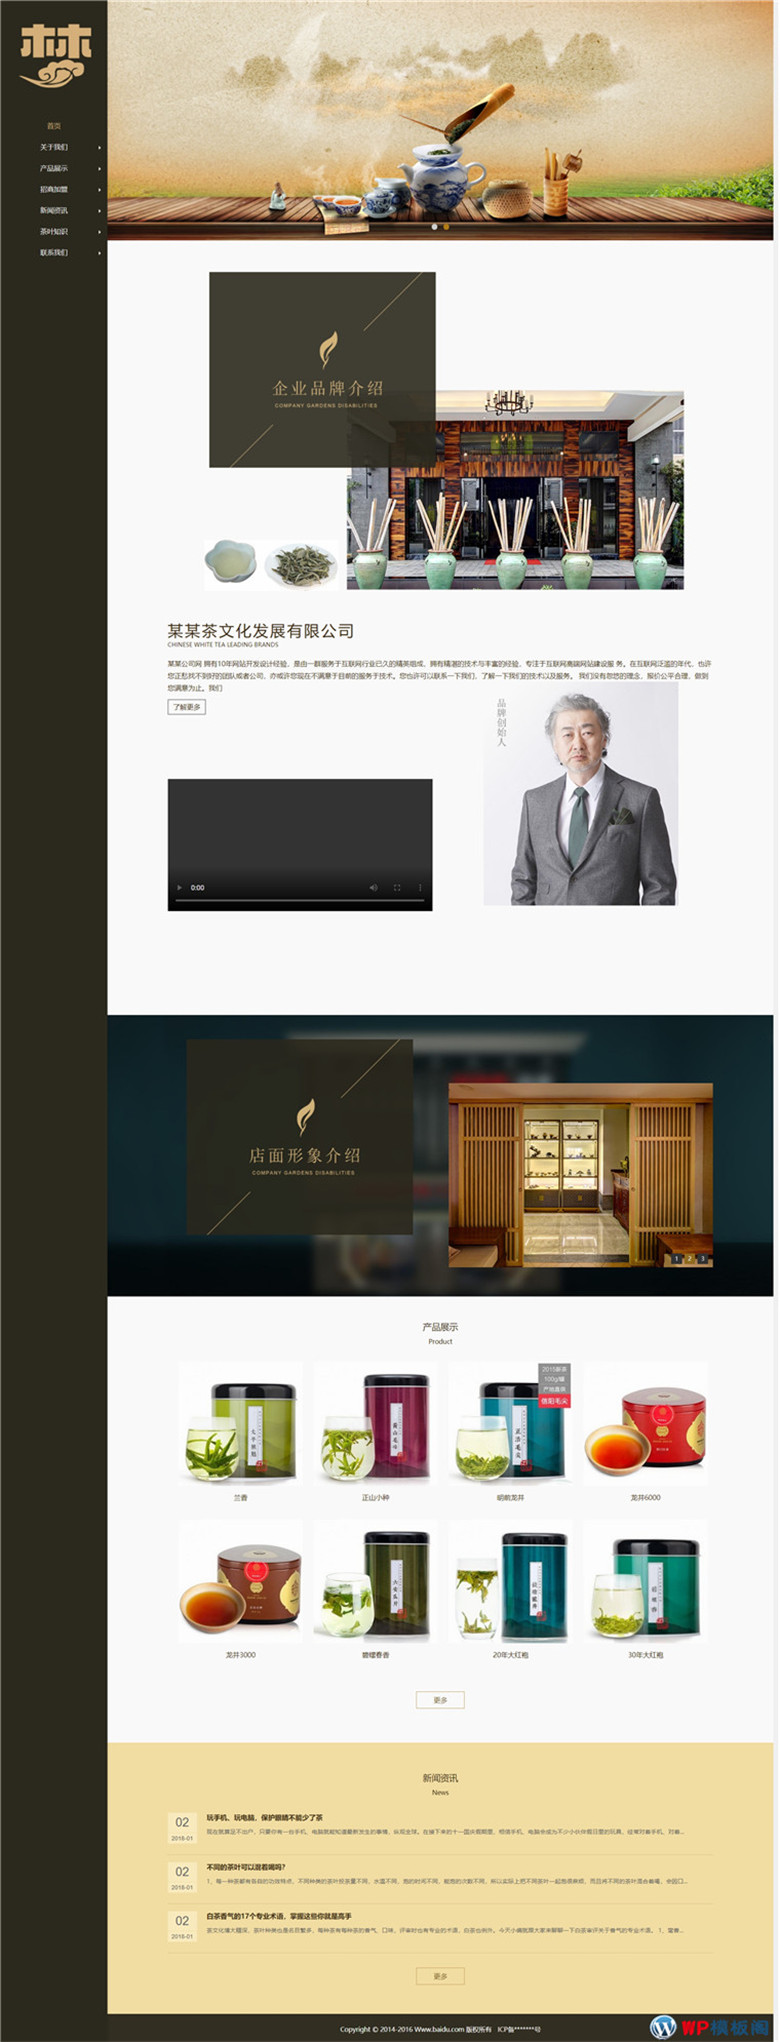 茶叶销售企业、茶艺茶文化展示型网站制作_网站建设模板演示图